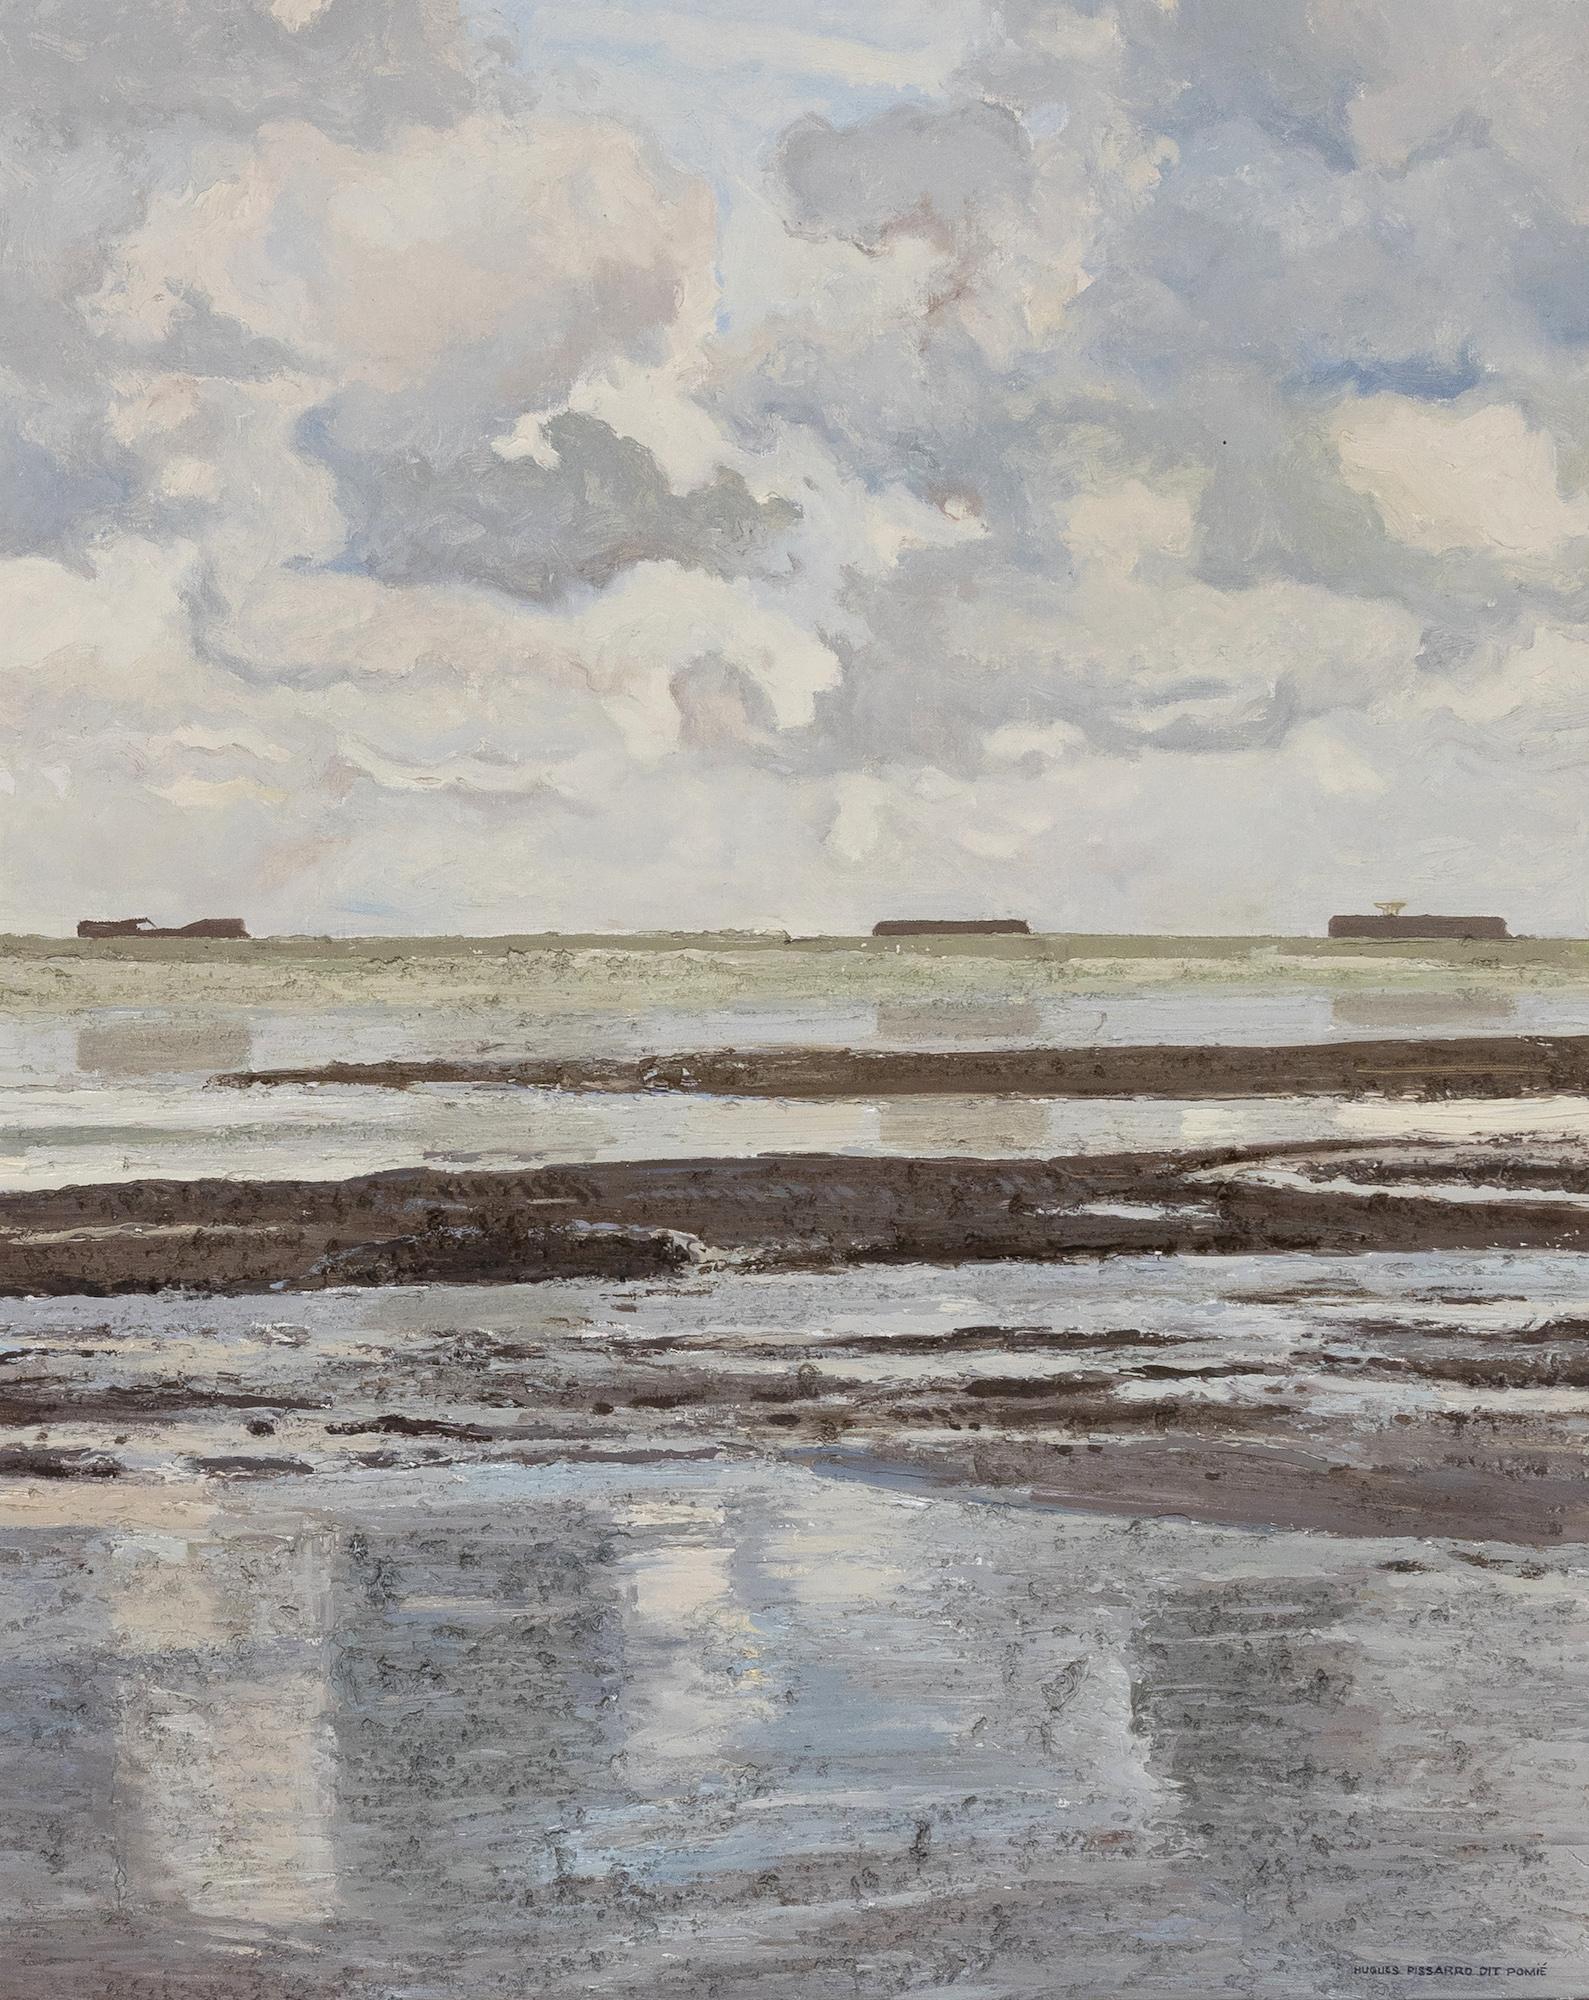 Petite Marine Grise by Hugues Pissarro dit Pomié - Oil painting, Landscape